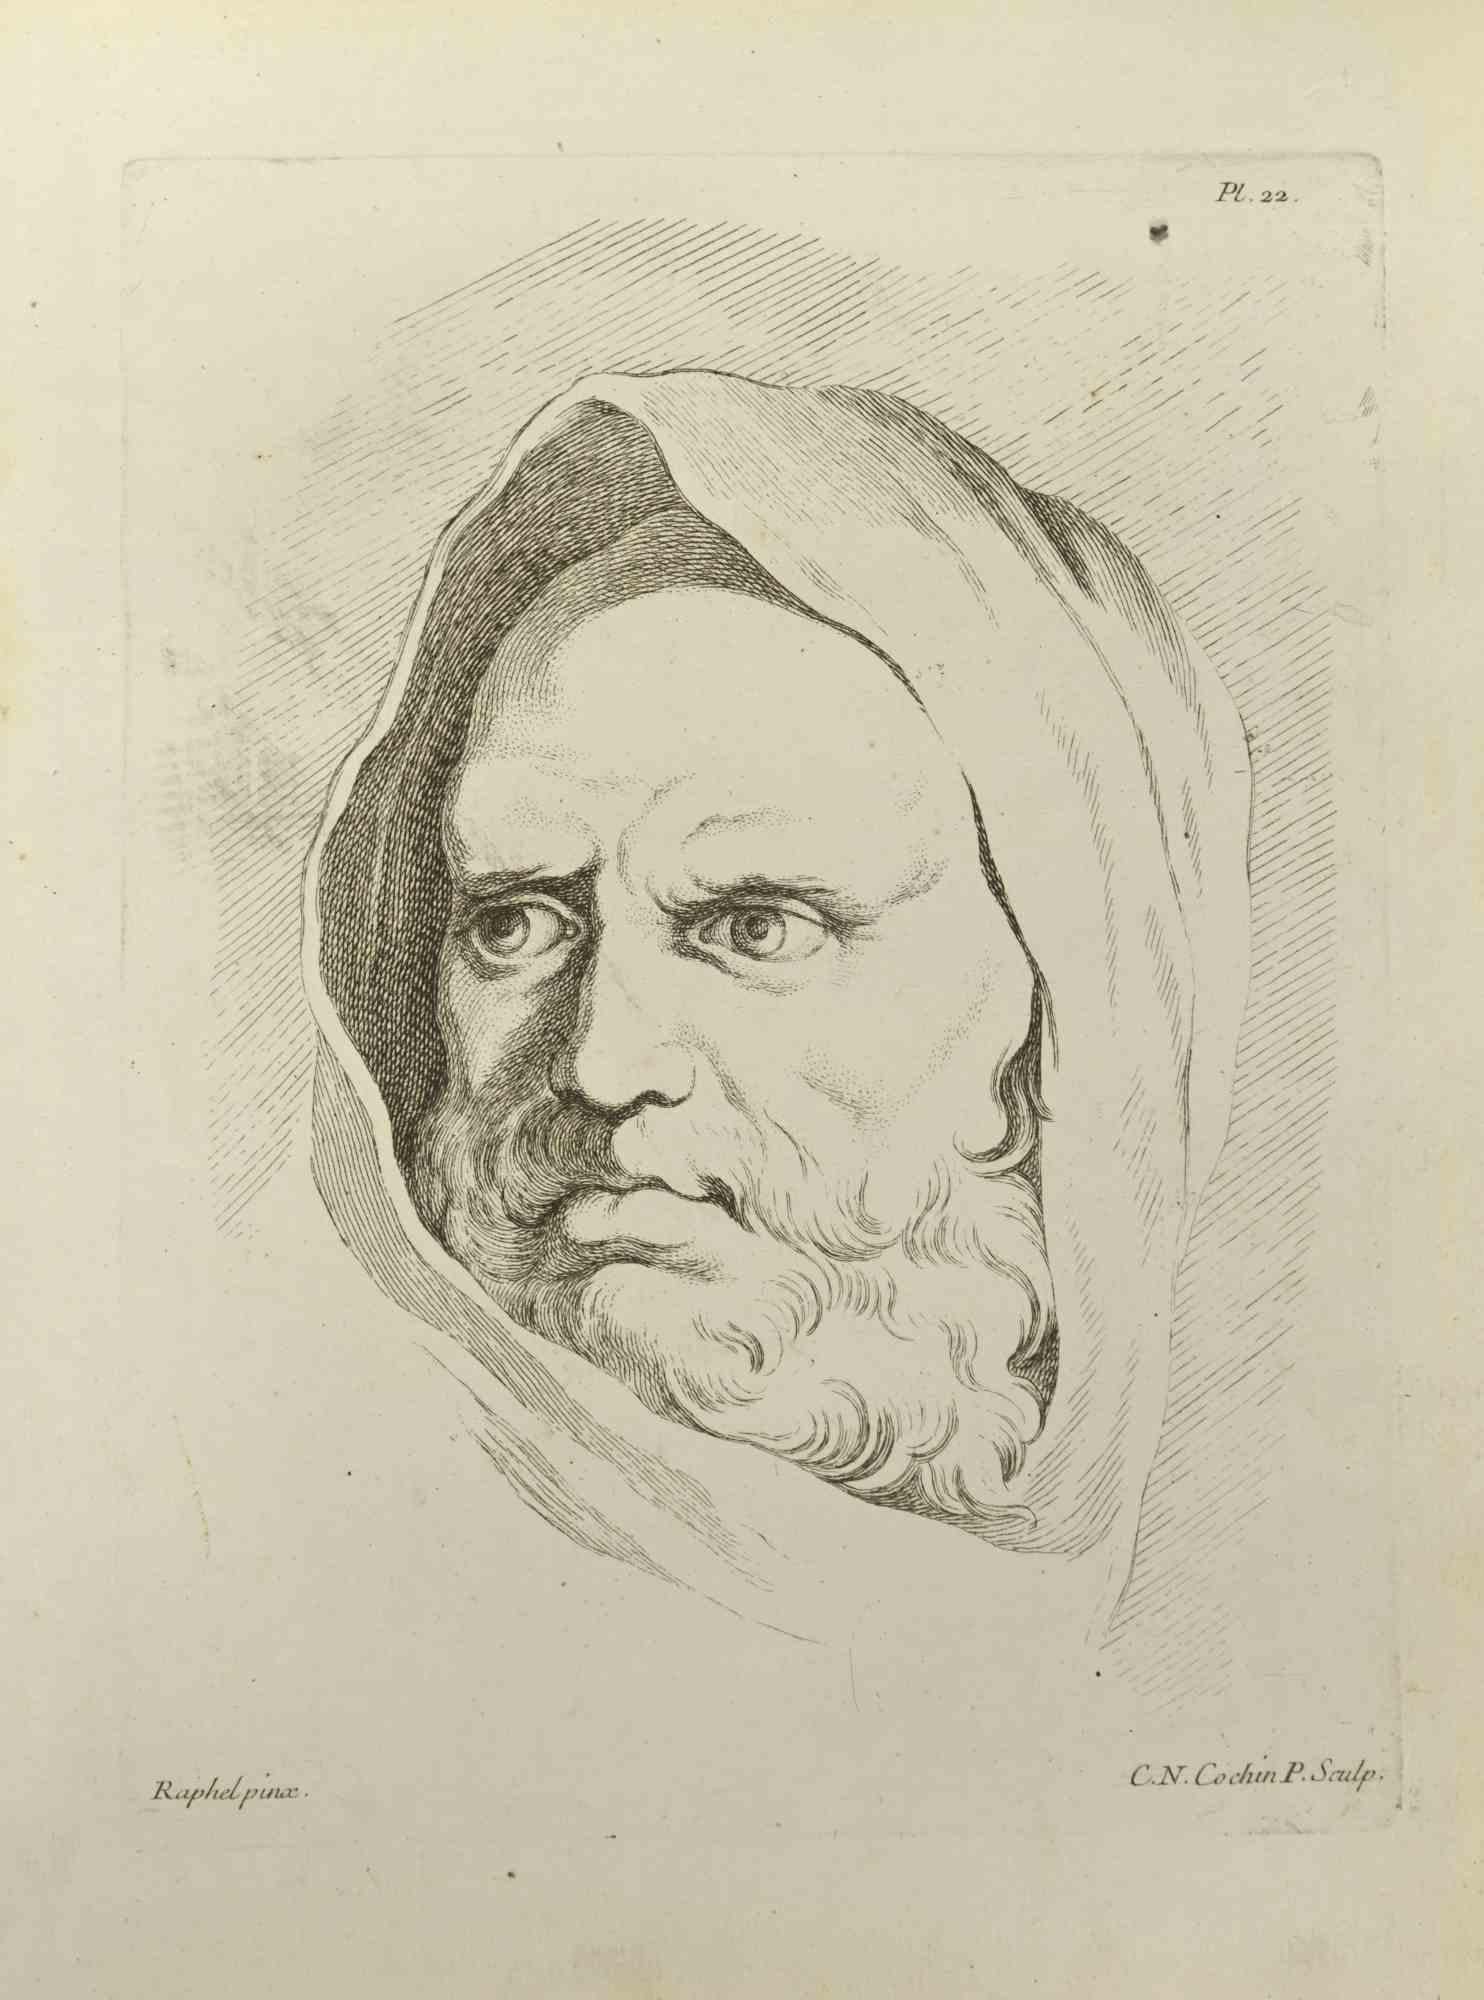 Porträt nach Raphael – Radierung von Nicholas Cochin – 1755